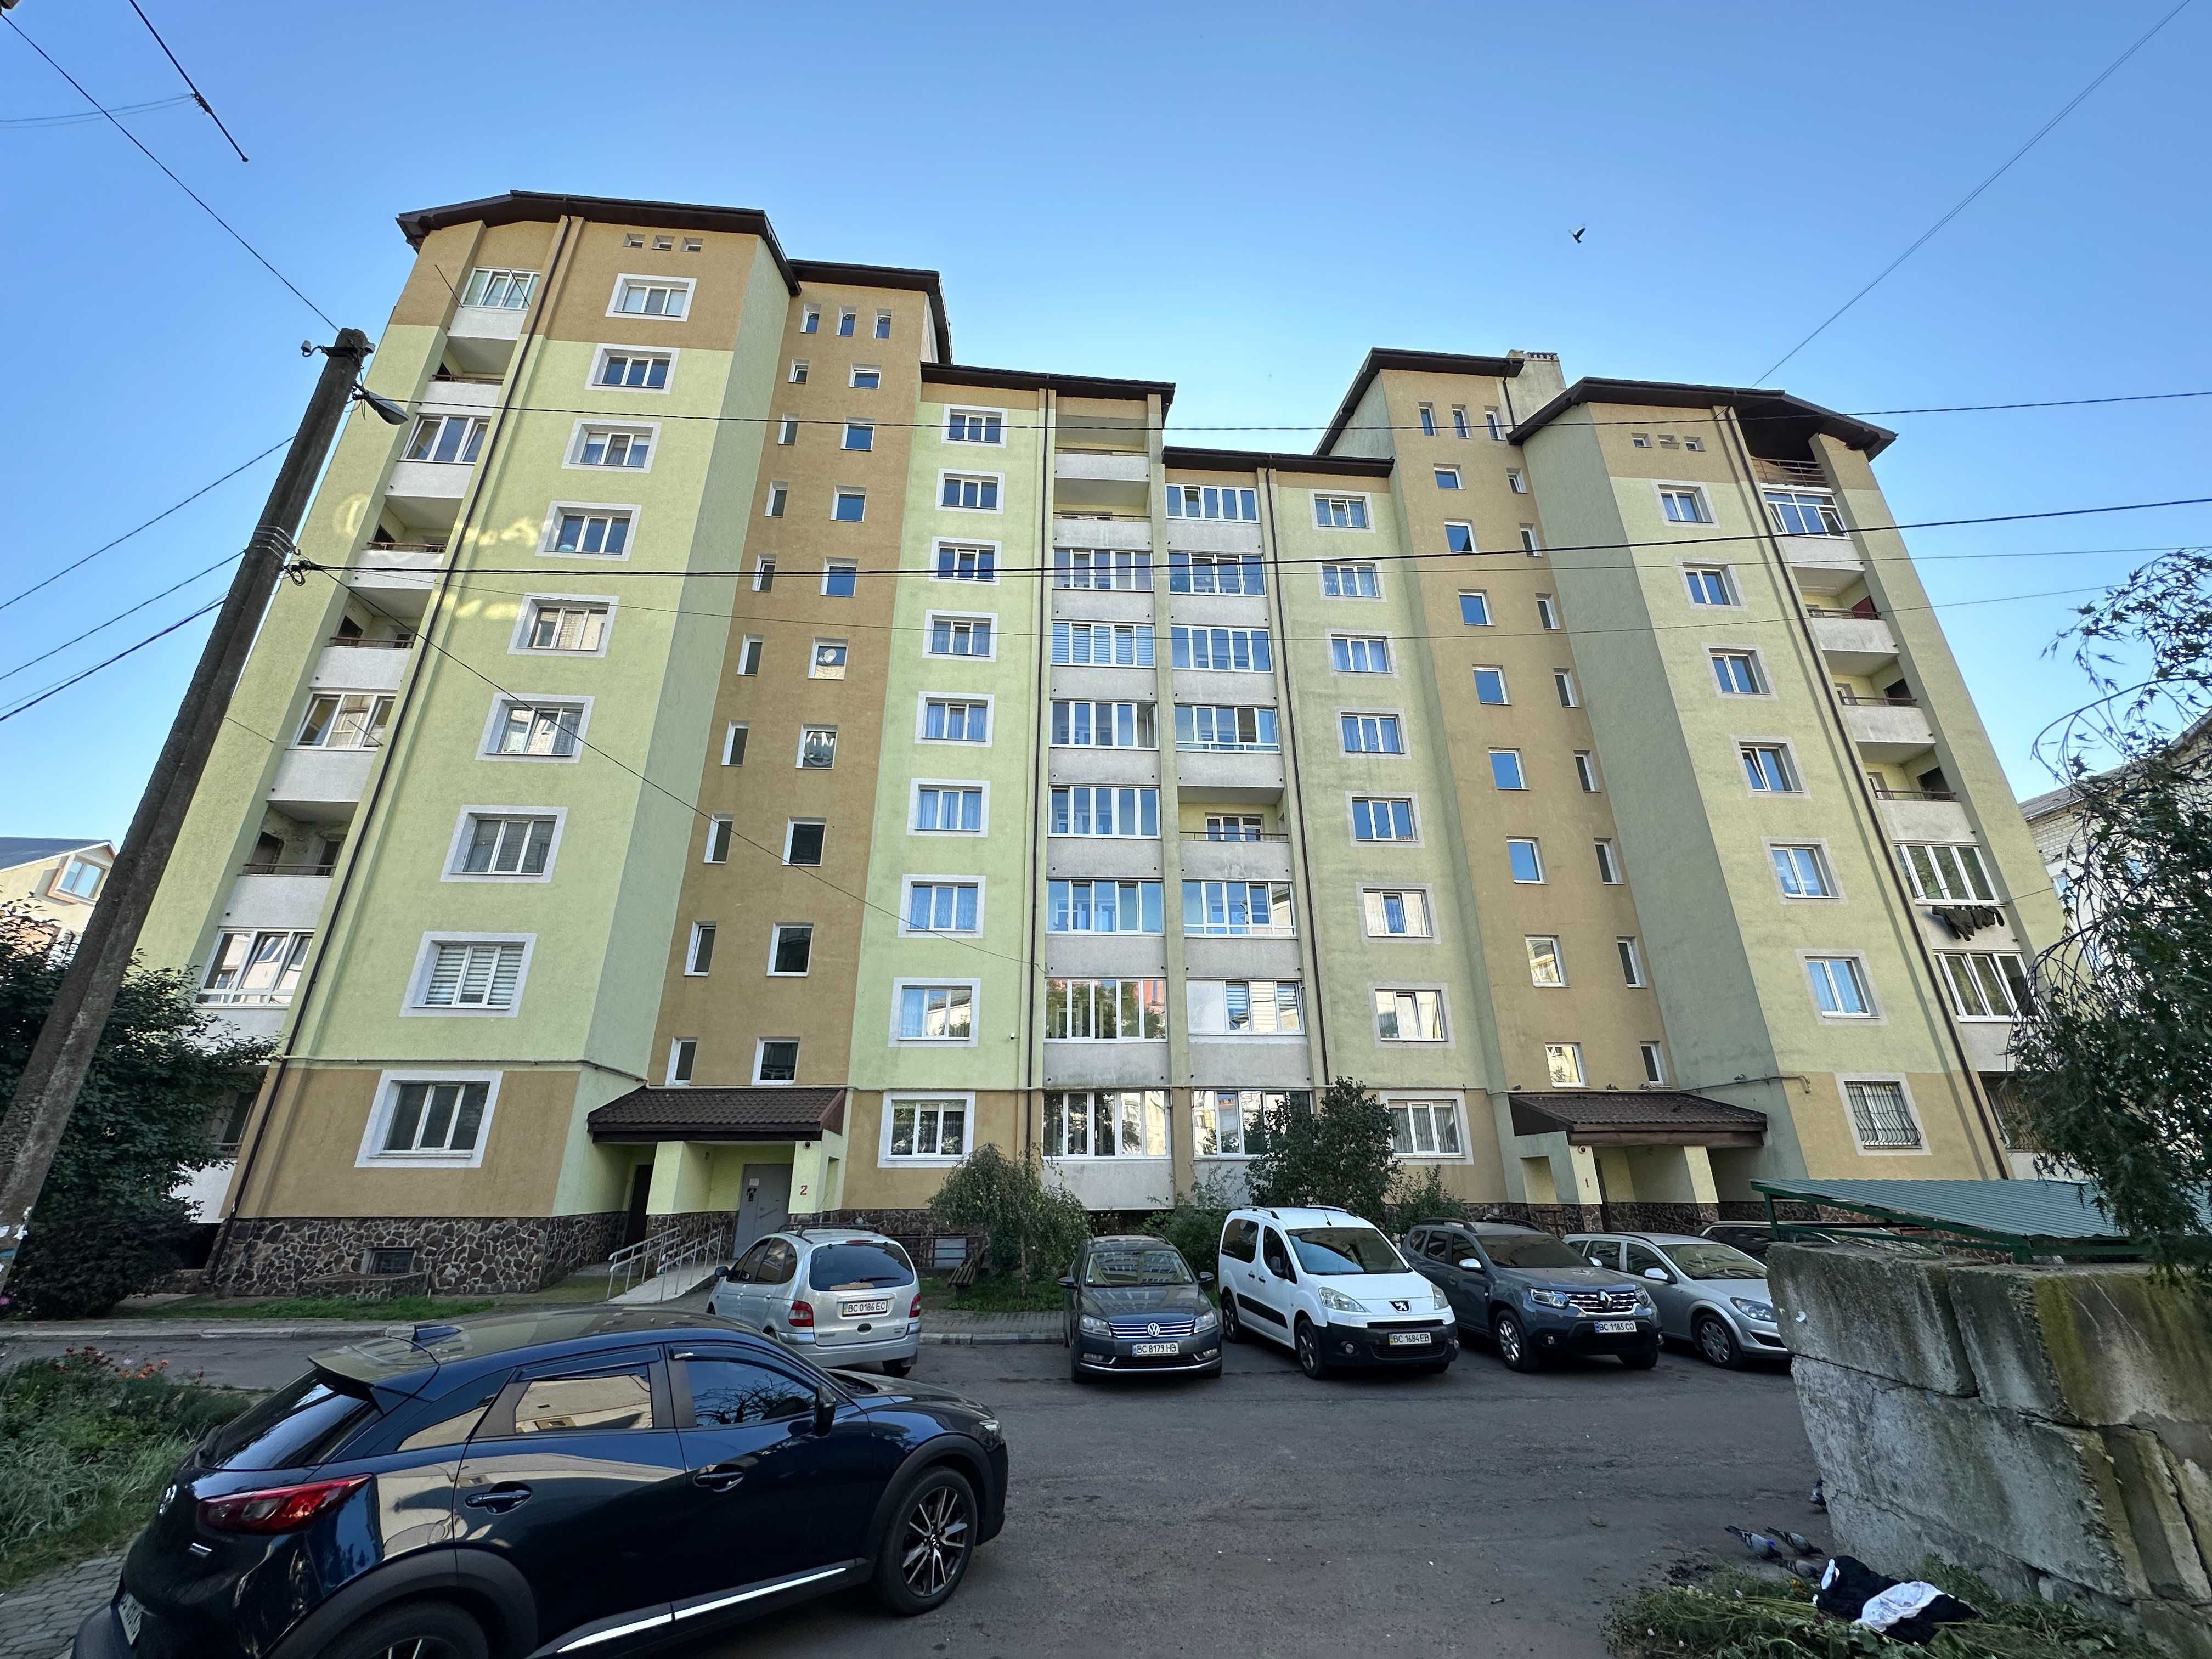 Продаж 3-кімнатної квартири в Новобудові (105.8м.кв) у м.Стрий